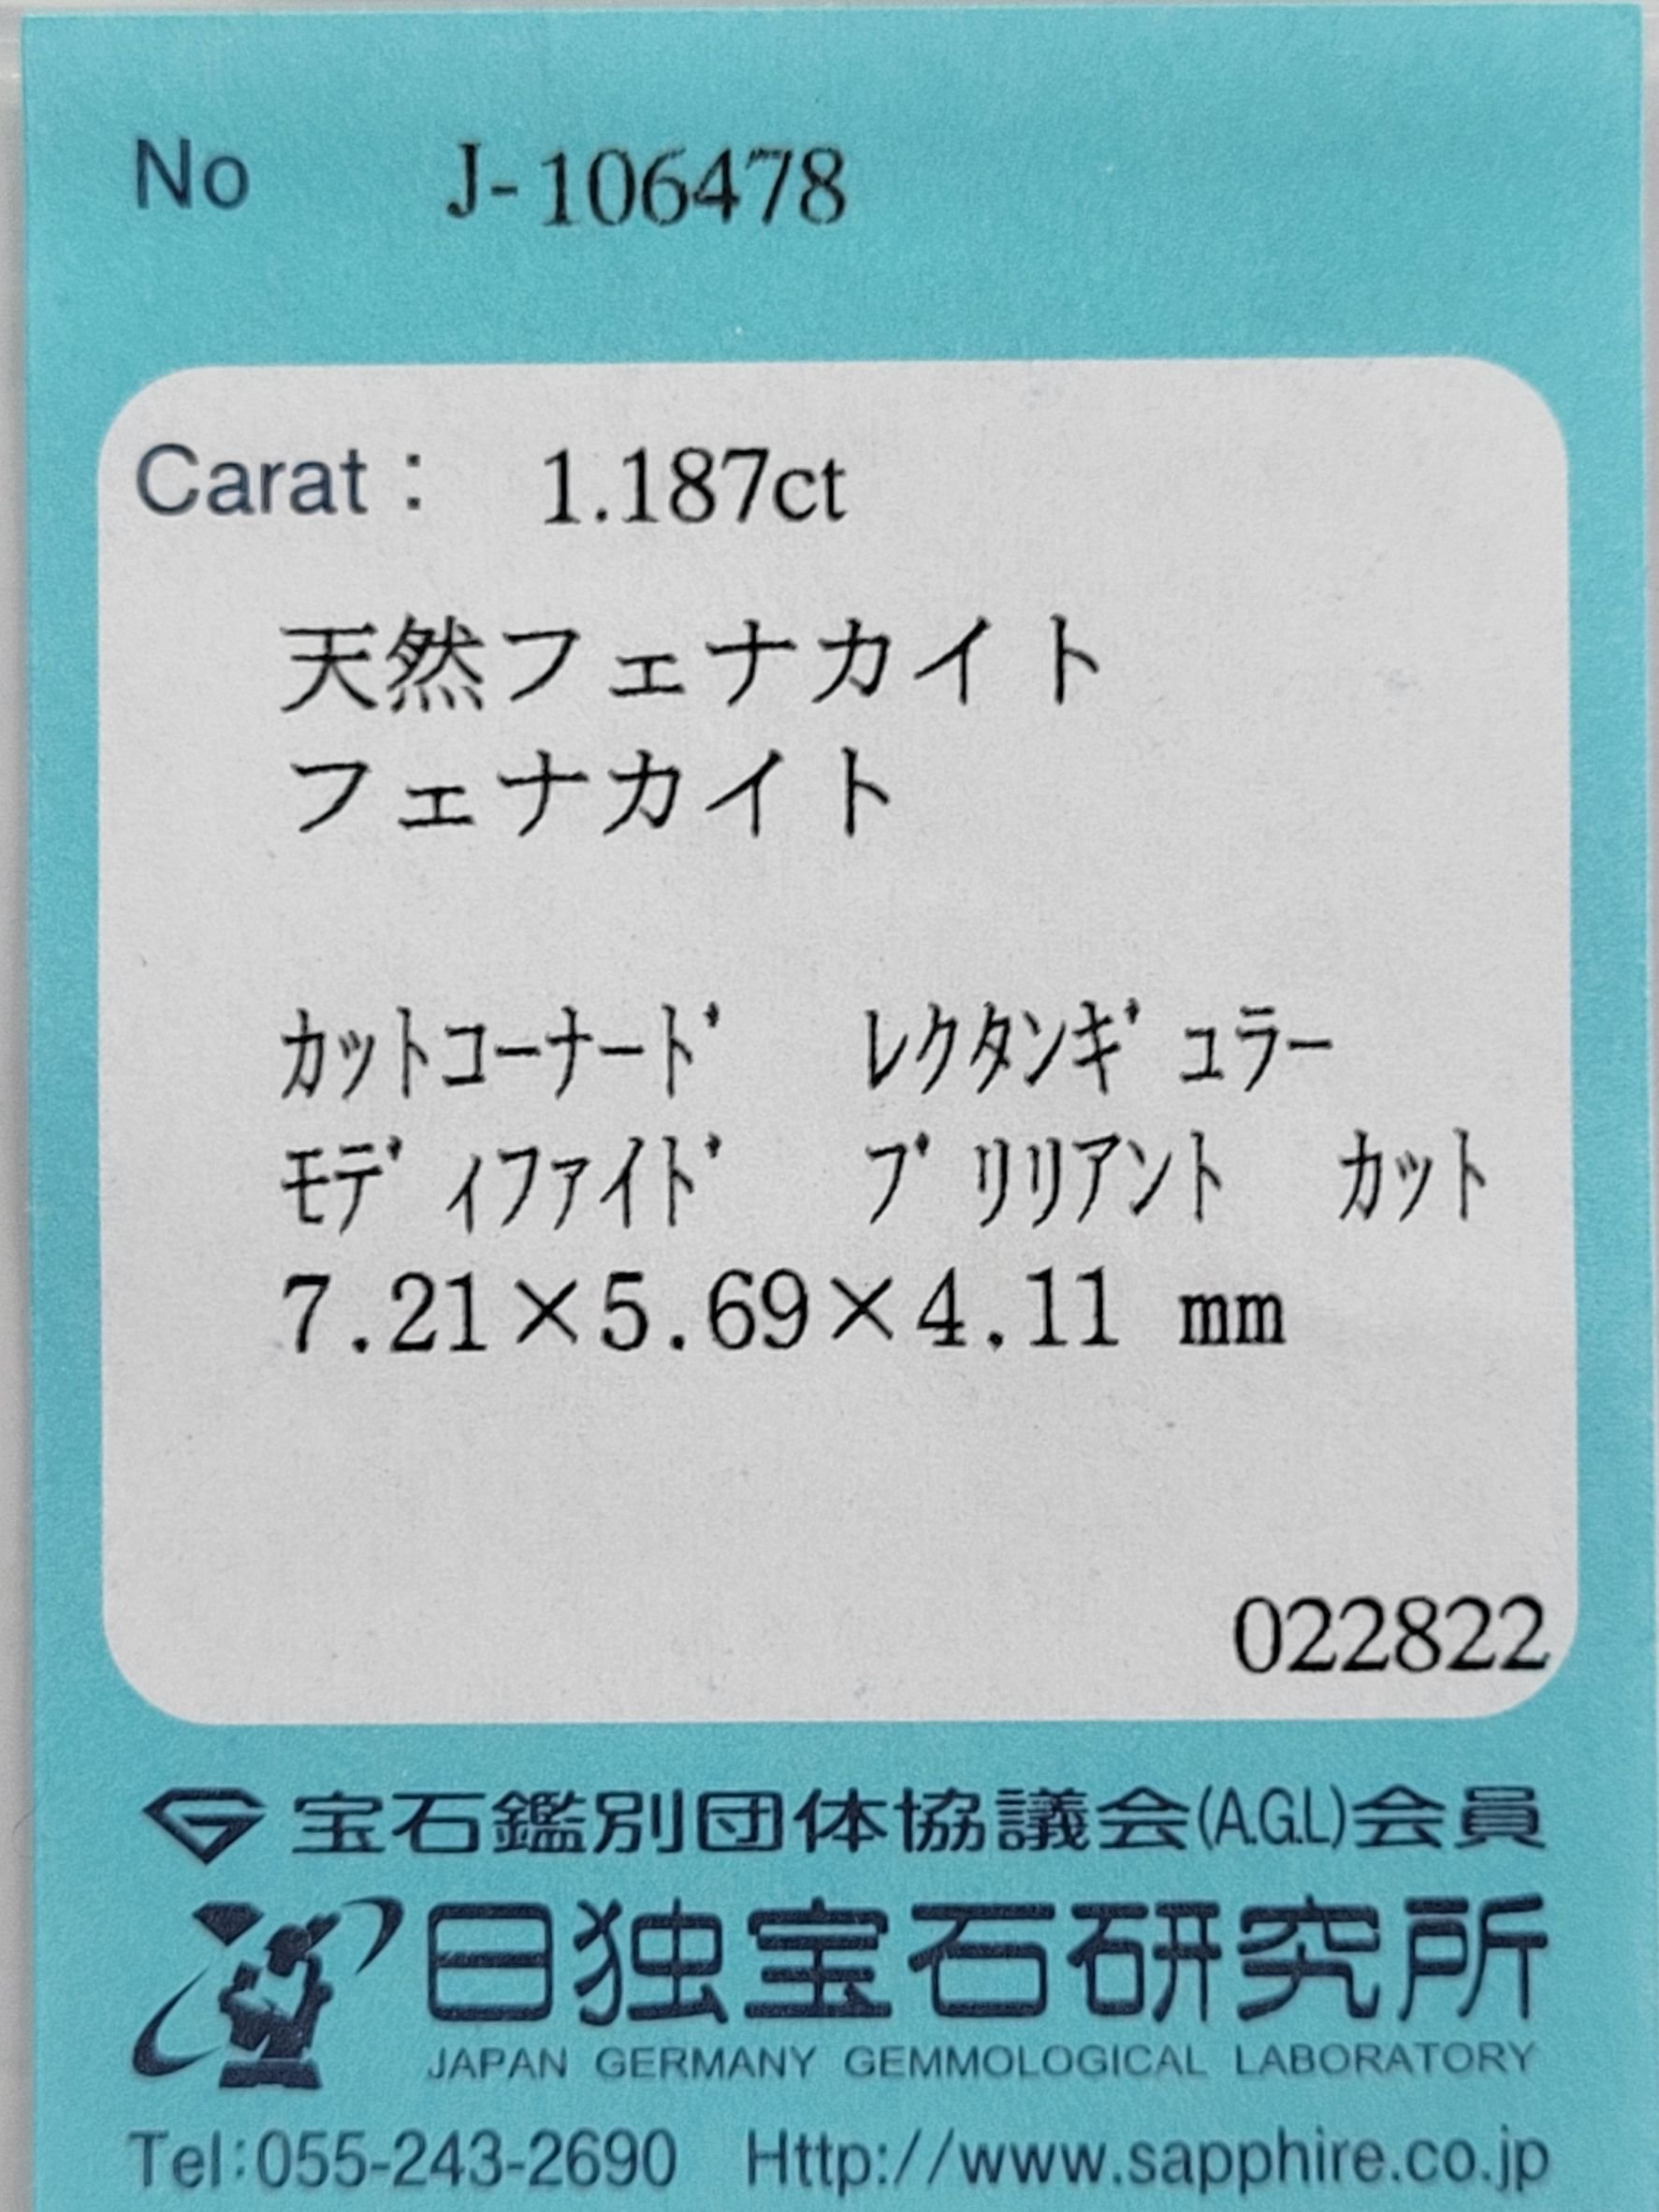 507433 ﾌｪﾅｶｲﾄ ﾙｰｽ RCT 1.187ct 日独ソ付 - カピルのお店デルミリオーレ